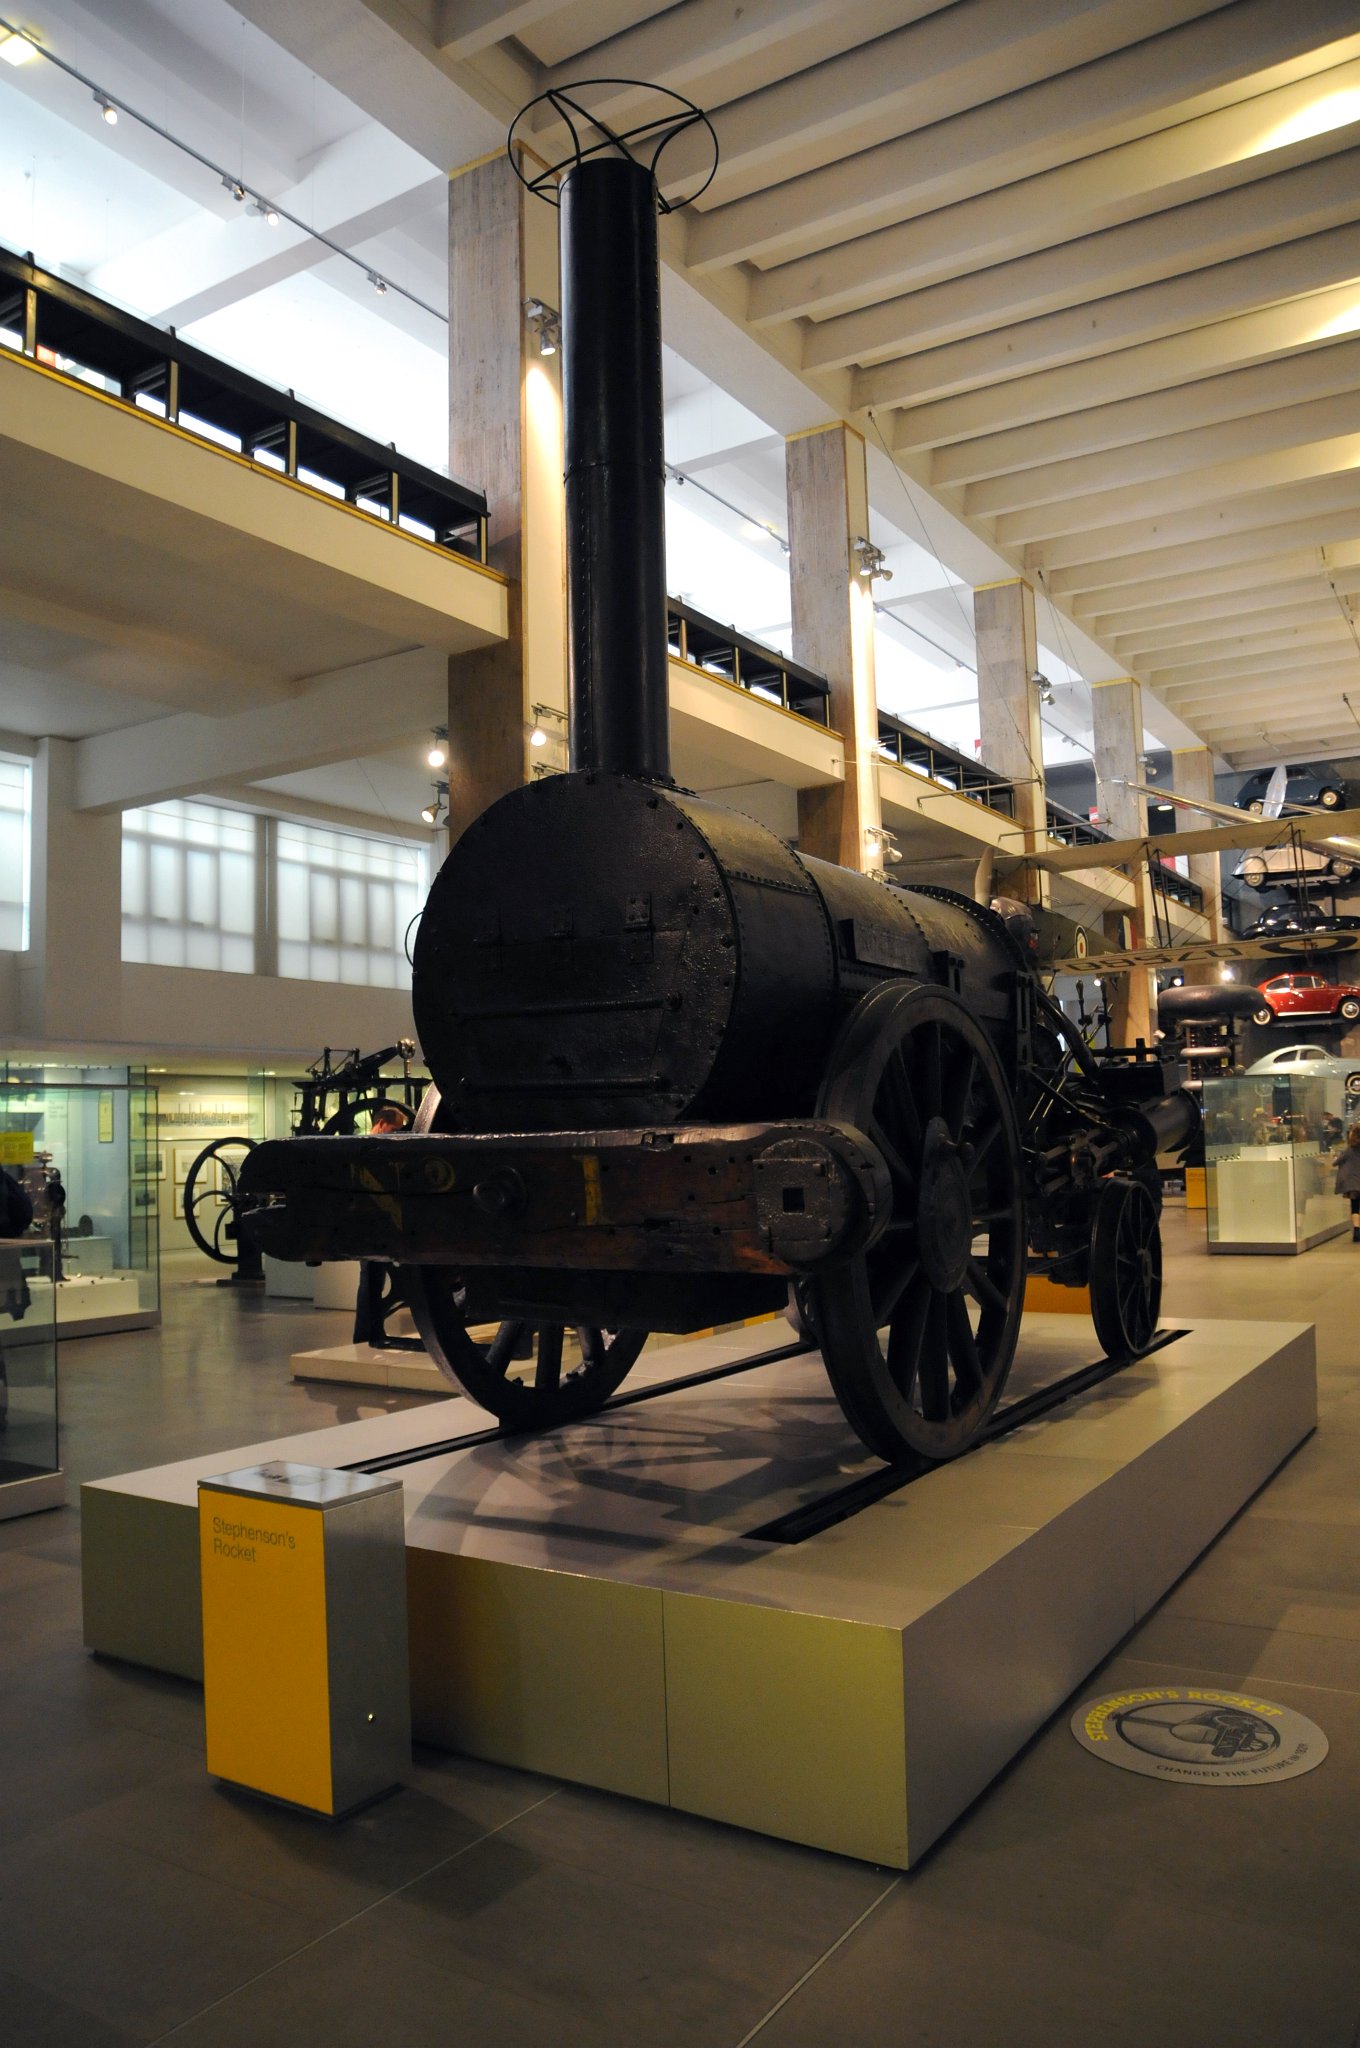 DSC_2838_1.jpg - Stephensonova první parní lokomotiva 1829. Science Museum. Stephensonova lokomotiva Raketa, stanovuje rychlostní rekord 47 km/h (29 mph) u Rainhill Trials poblíž Liverpoolu.